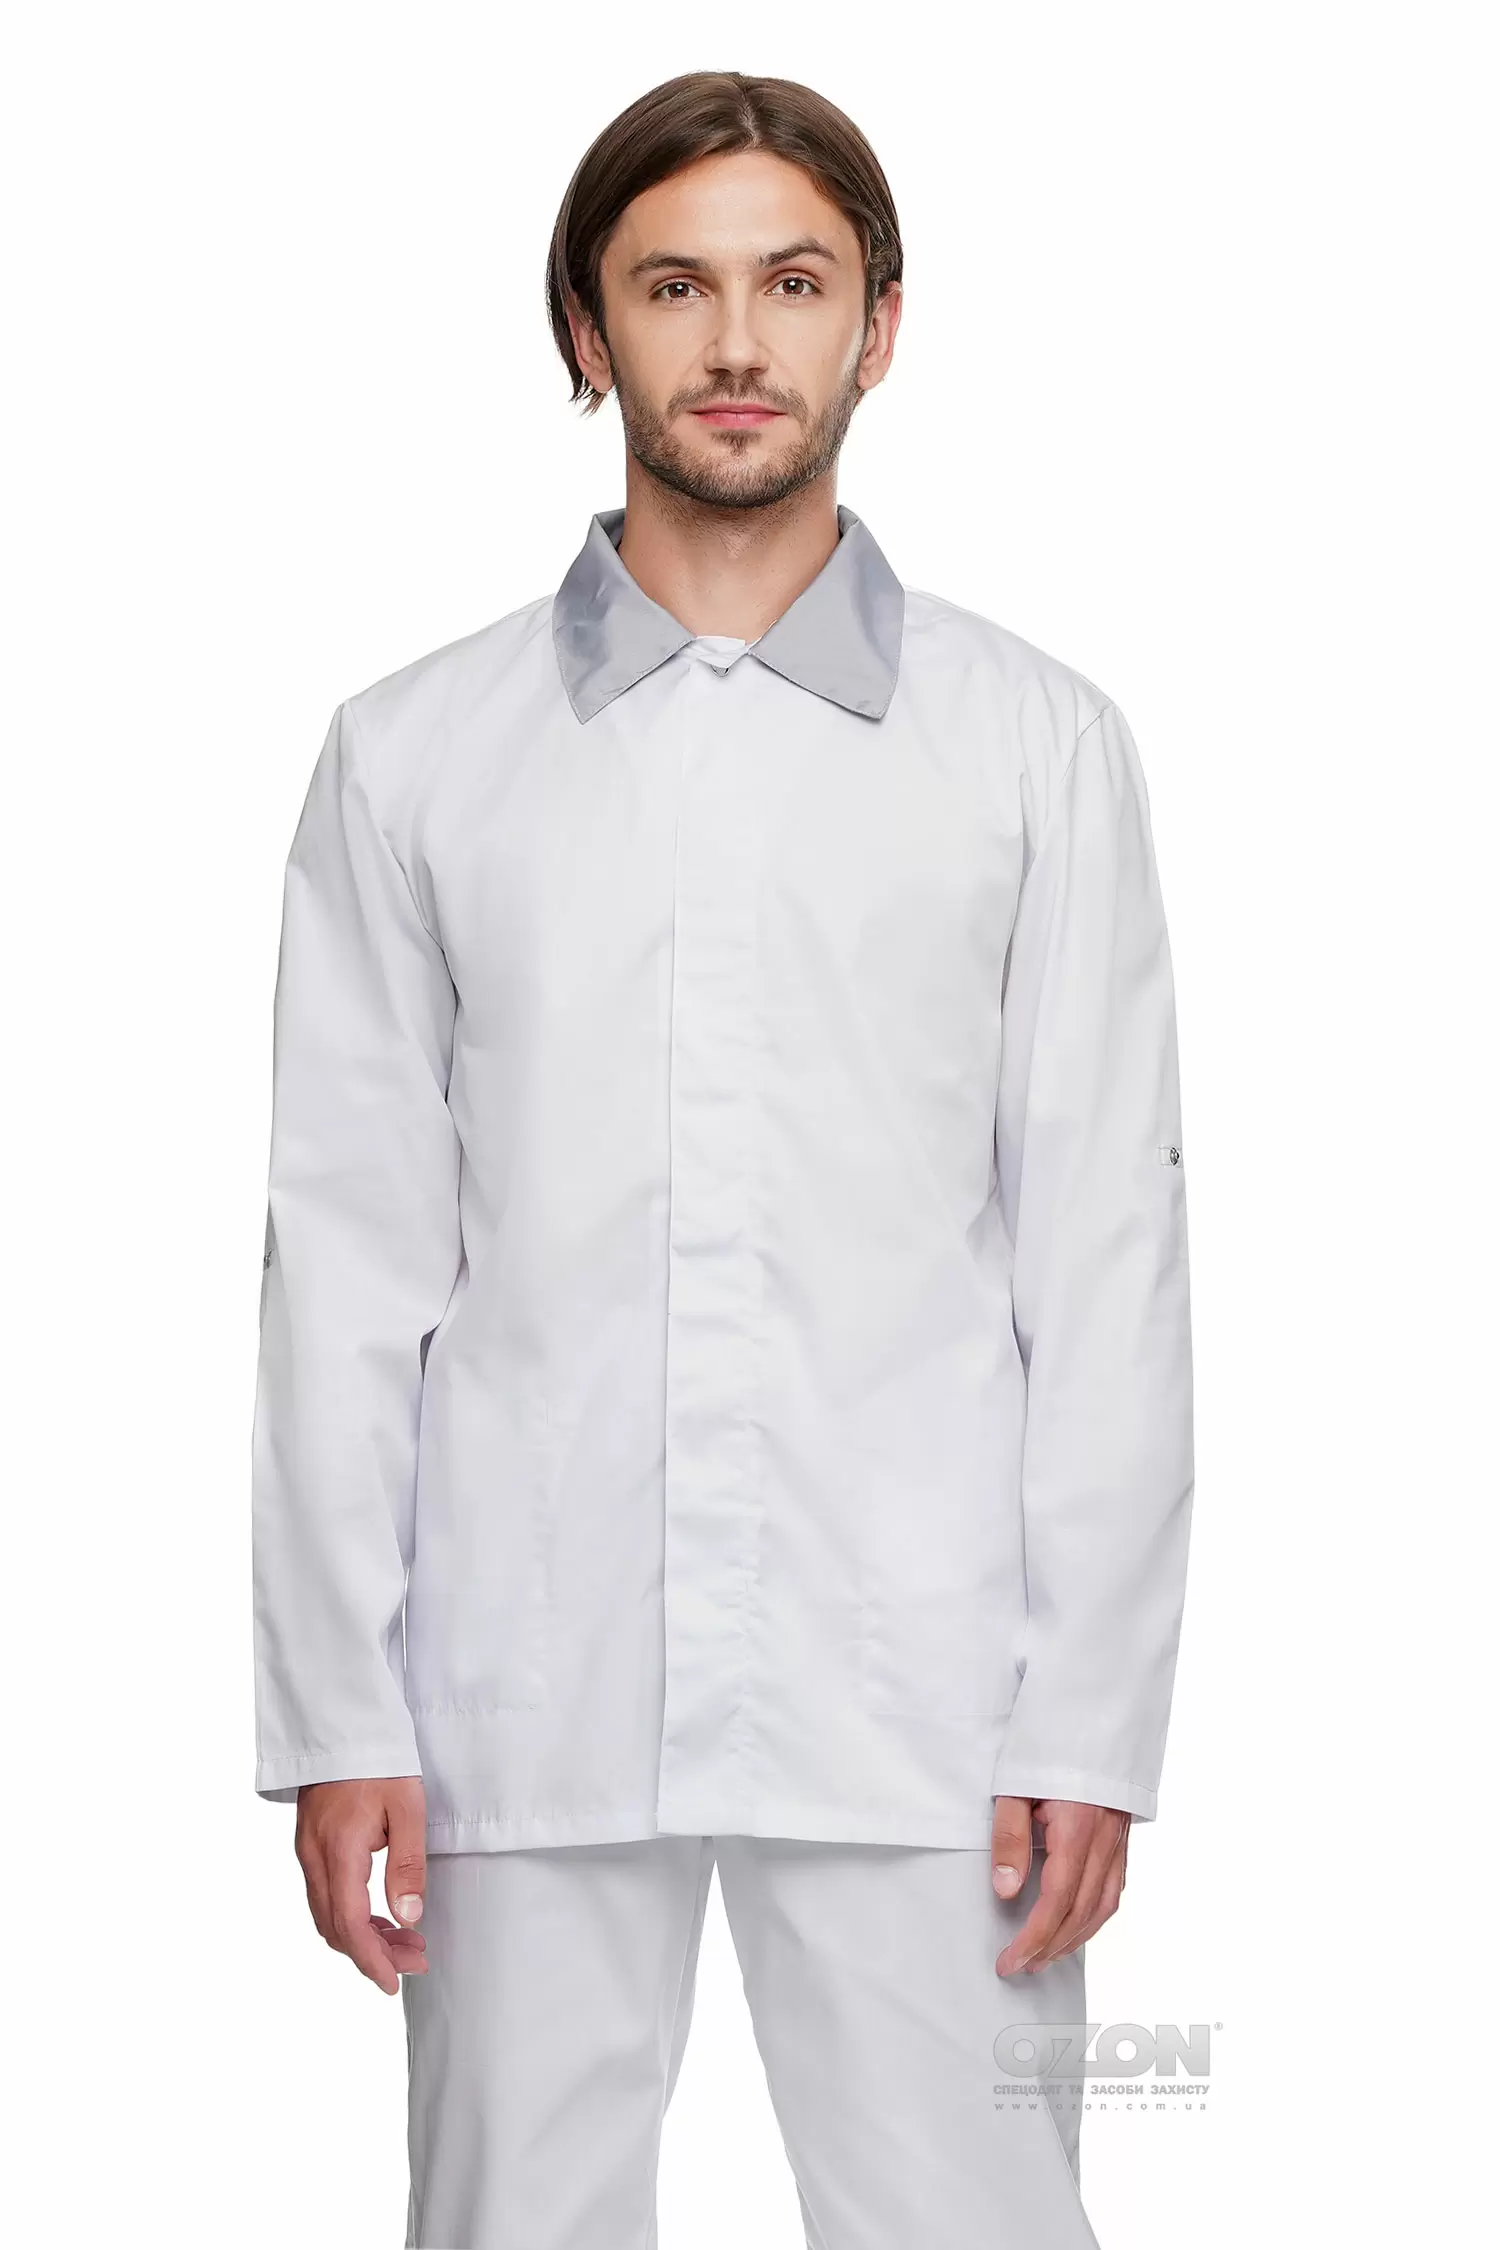 Куртка мужская Органик К5, белая - Фото 1